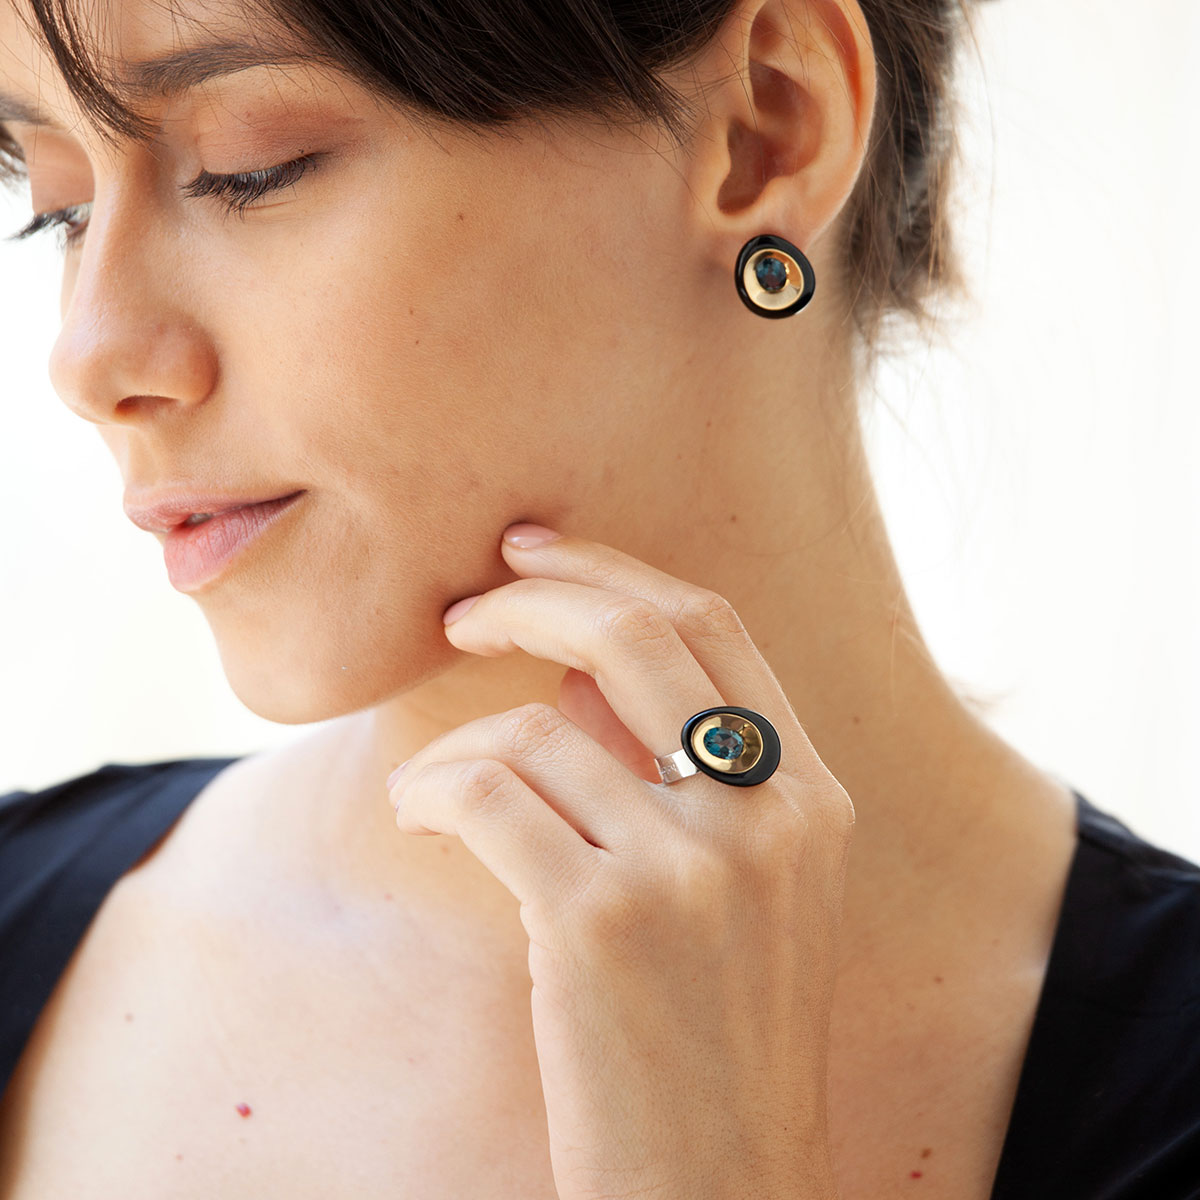 Elo handmade earrings in 9k or 18k gold, sterling silver, onyx and London Blue topaz designed by Belen Bajo m1